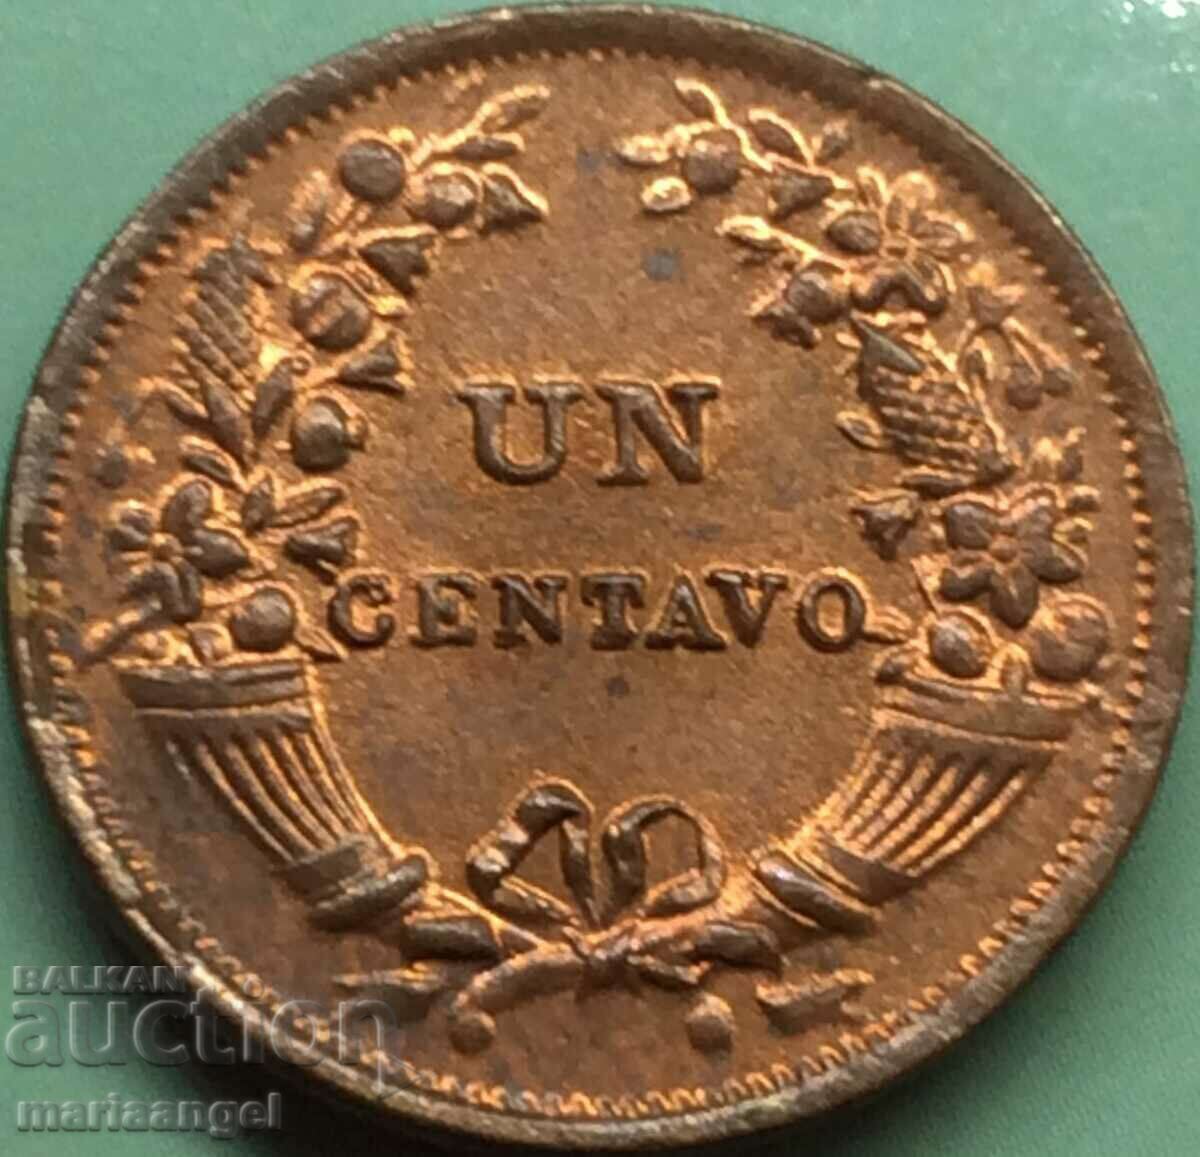 Περού 1 centavo 1941 χαλκός - αρκετά σπάνιο